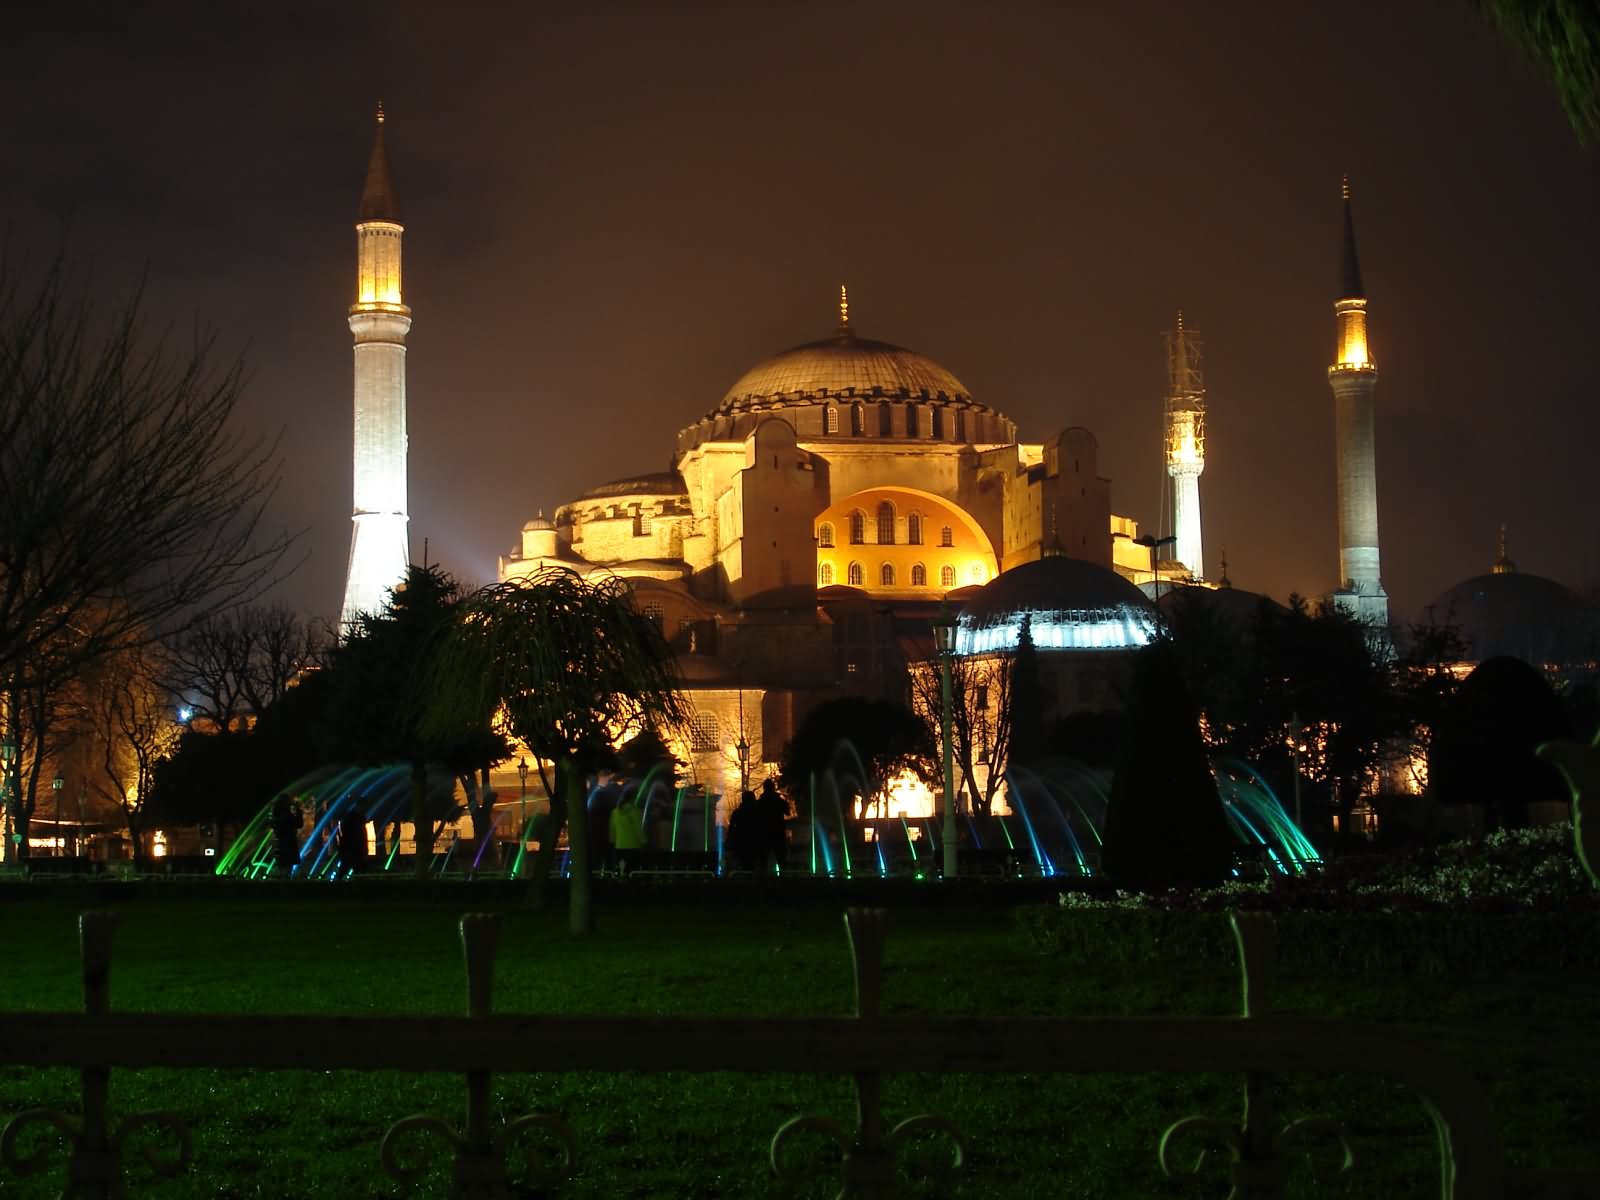 The Hagia Sophia Night Picture